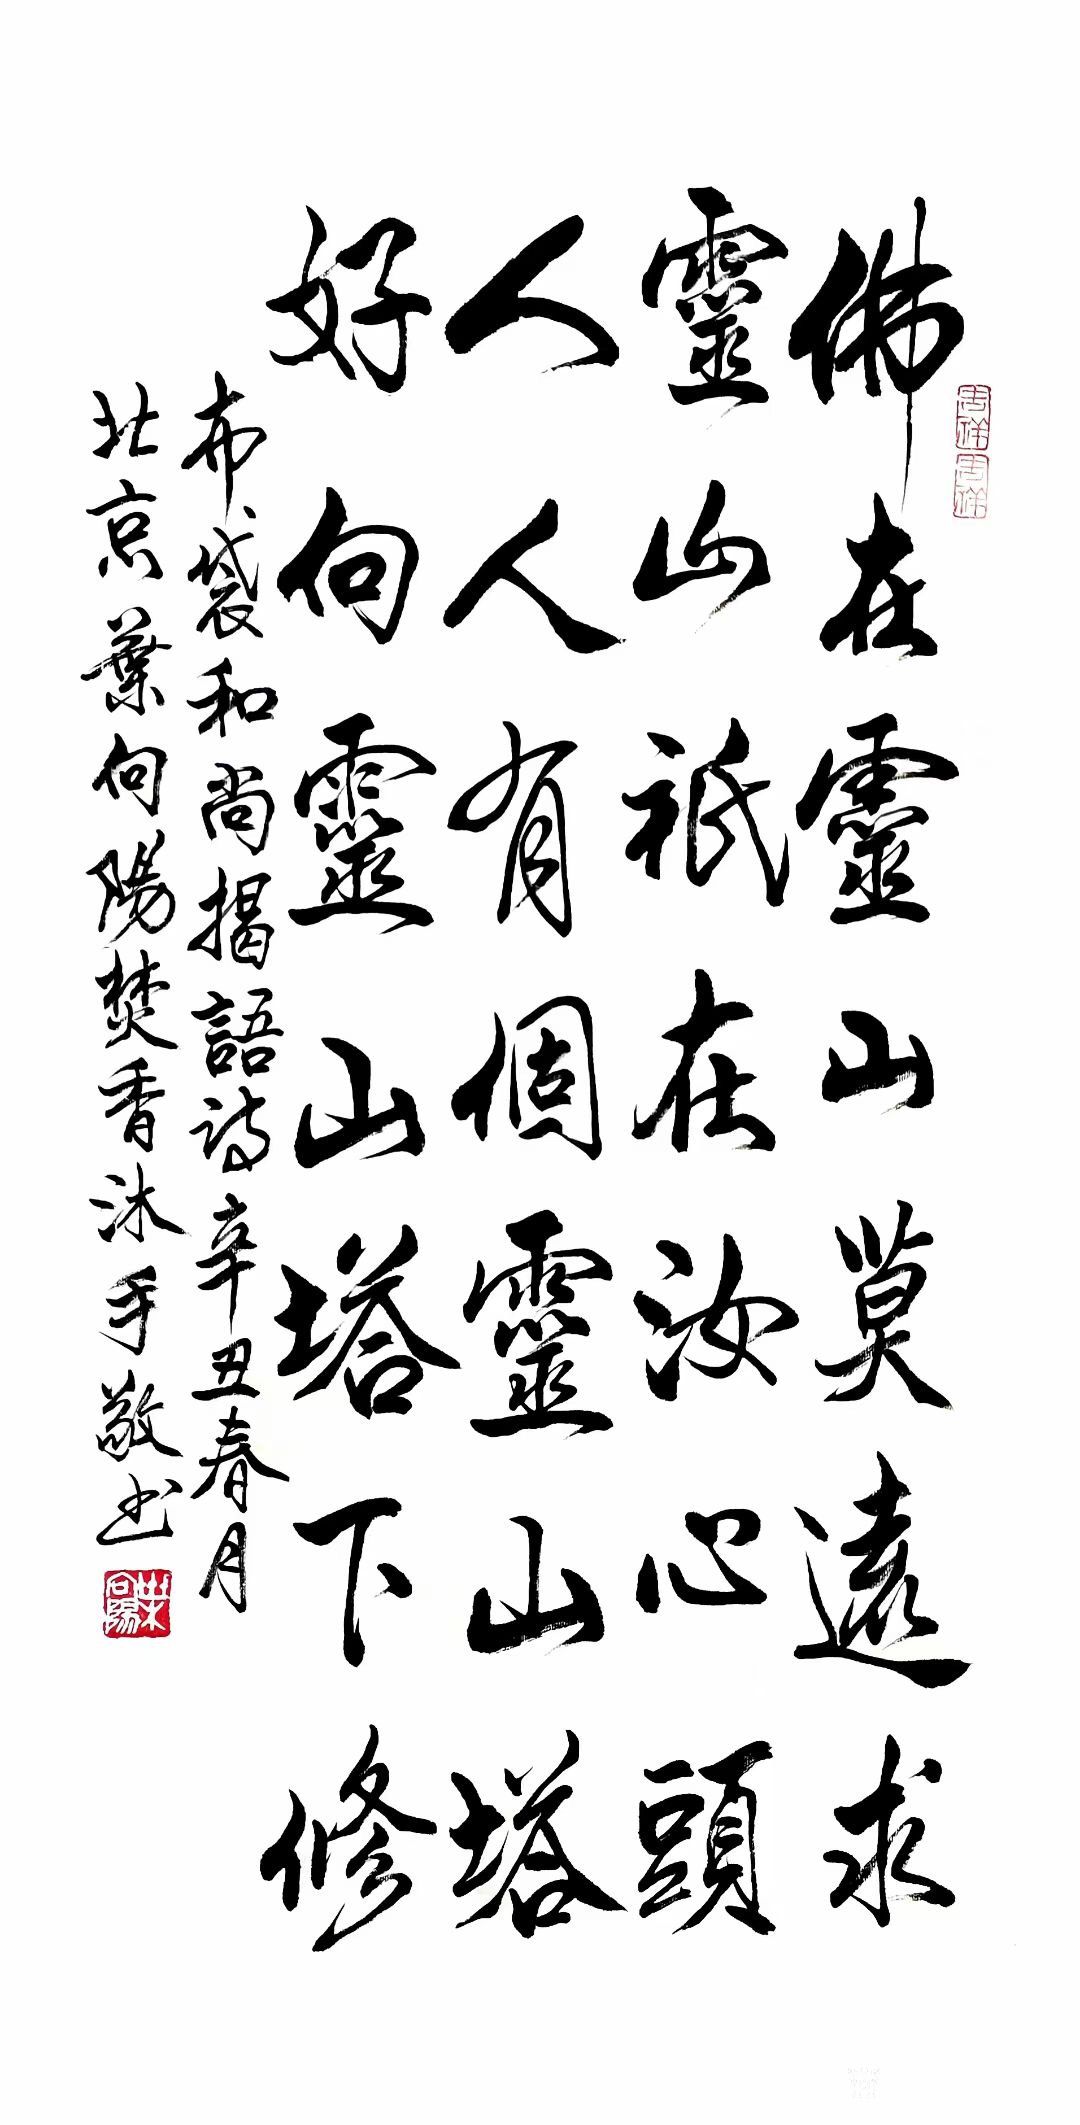 行书书法作品《布袋和尚偈语诗》,辛丑年春月北京叶向阳焚香沐手敬书.